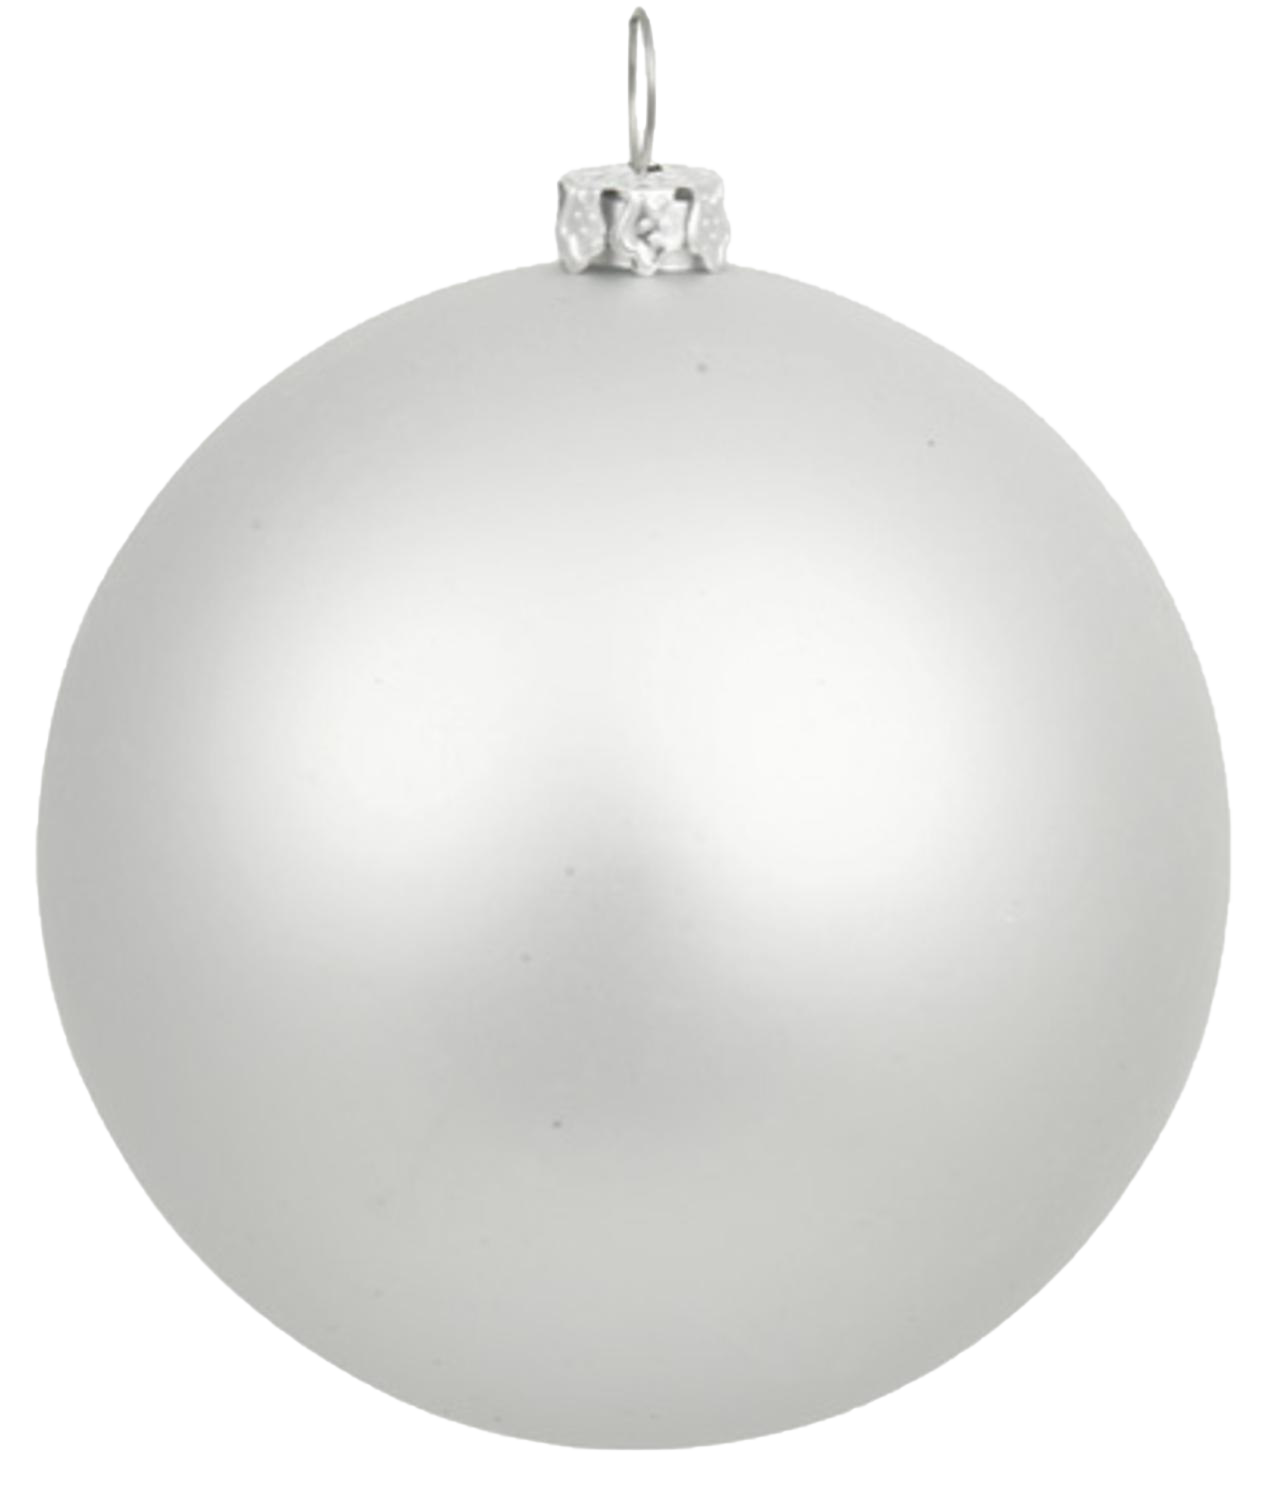 Silver Christmas Ball PNG Image